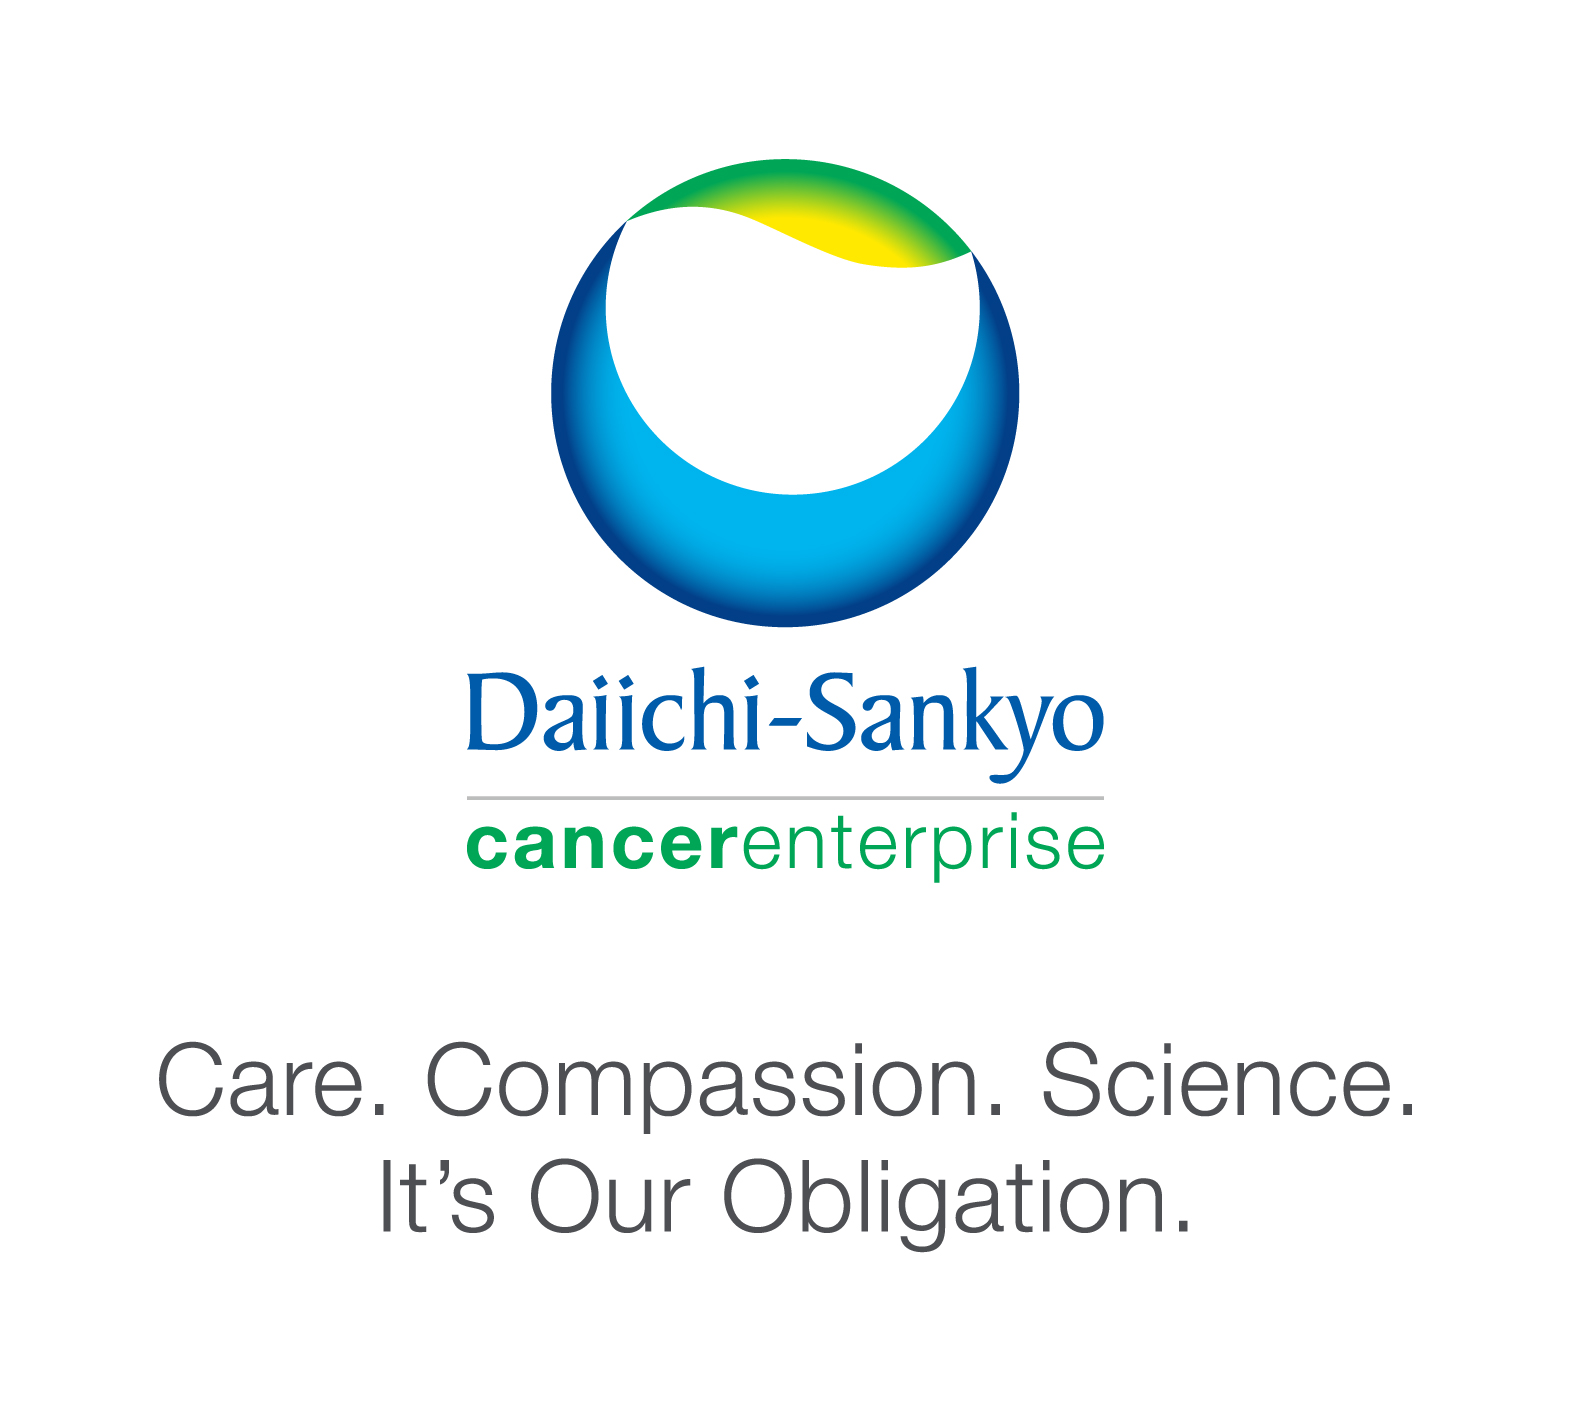 Daiichi Sankyo Cancer Enterprise Logo